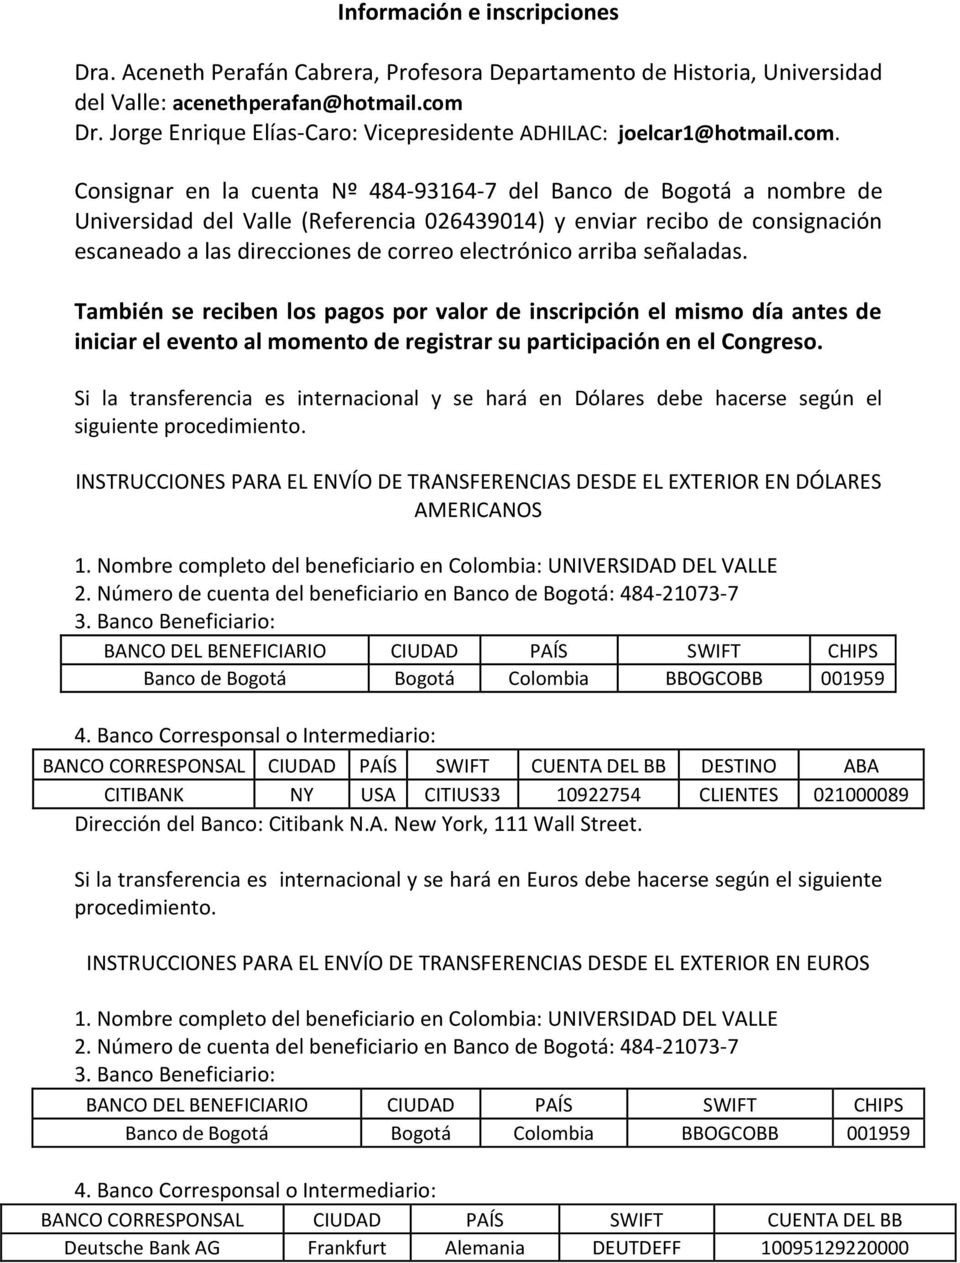 Consignar en la cuenta Nº 484-93164-7 del Banco de Bogotá a nombre de Universidad del Valle (Referencia 026439014) y enviar recibo de consignación escaneado a las direcciones de correo electrónico